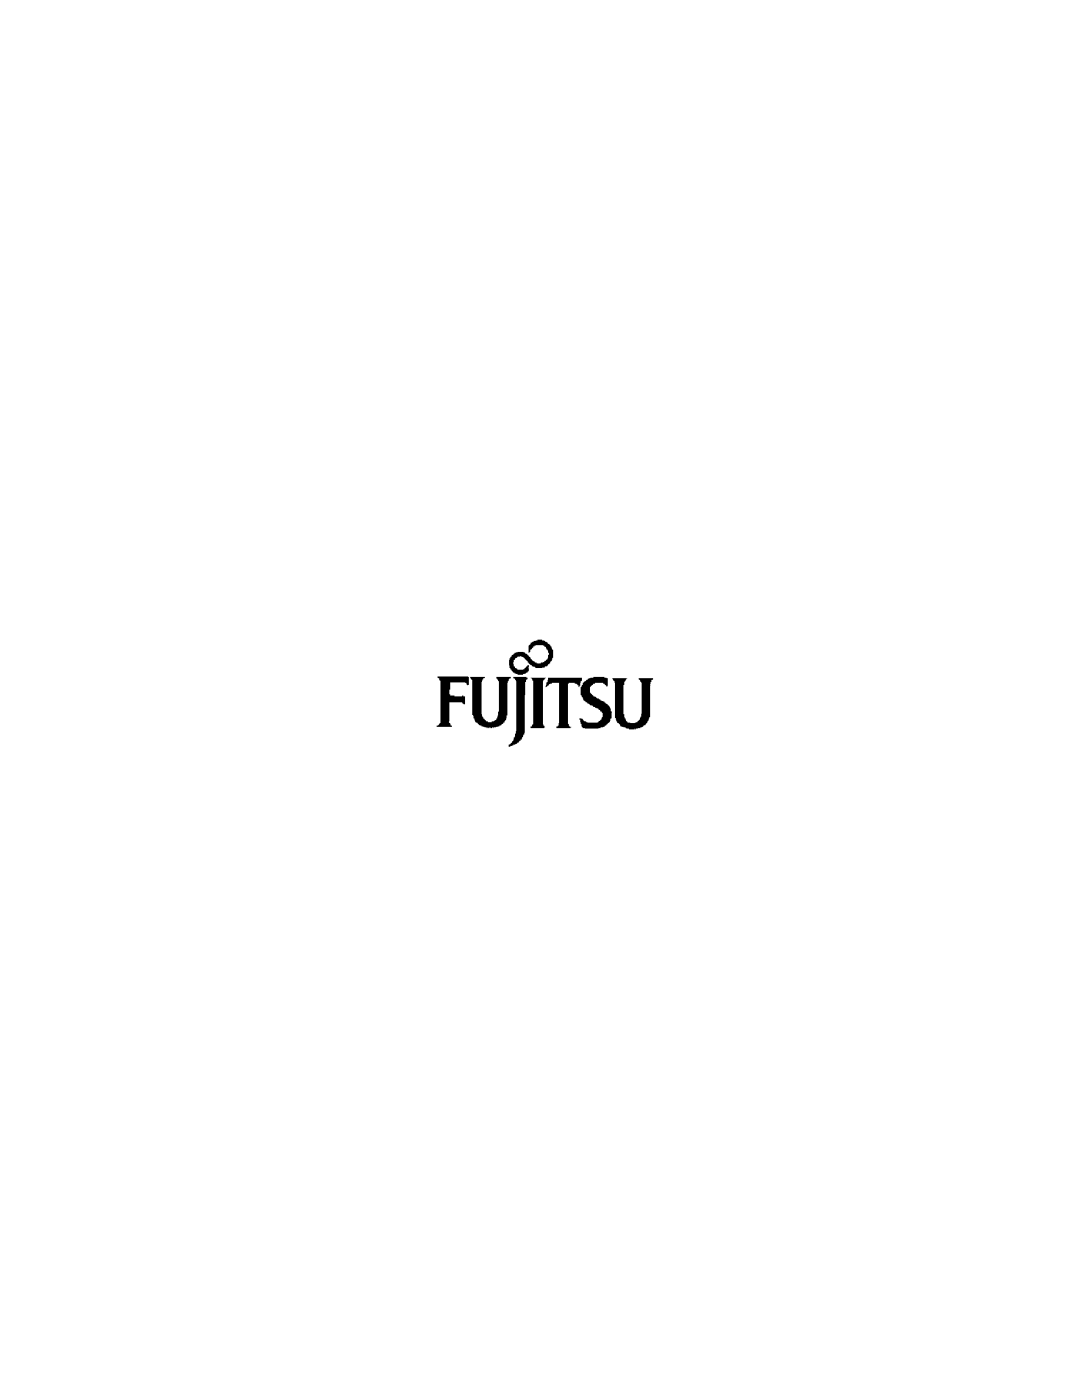 Fujitsu MAW3073NC/NP, MAW3300NC/NP, MAW3147NC/NP manual 